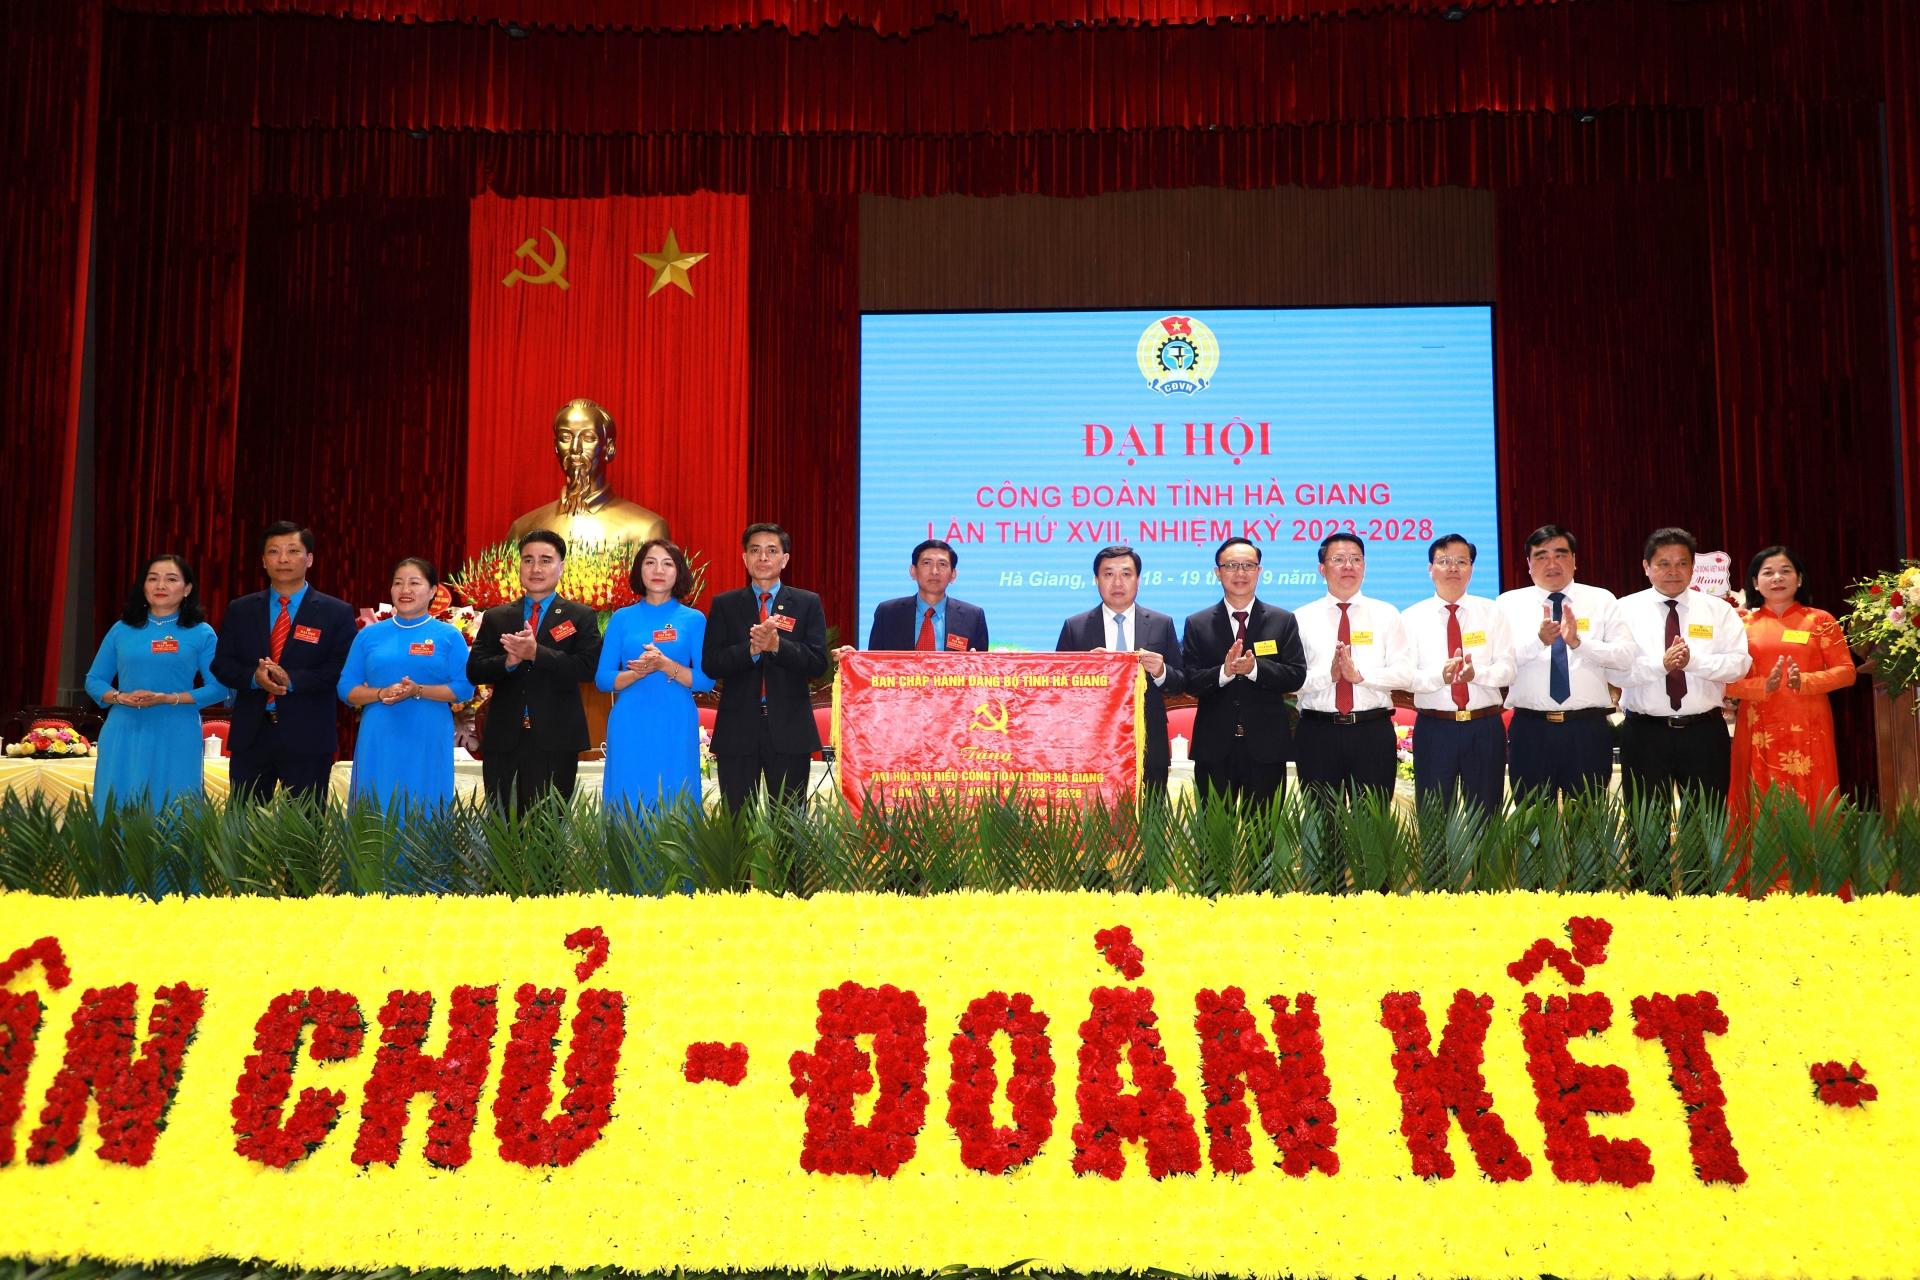 Quyền Bí thư Tỉnh ủy Nguyễn Mạnh Dũng và các đồng chí lãnh đạo tỉnh tặng bức trướng chúc mừng Đại hội.